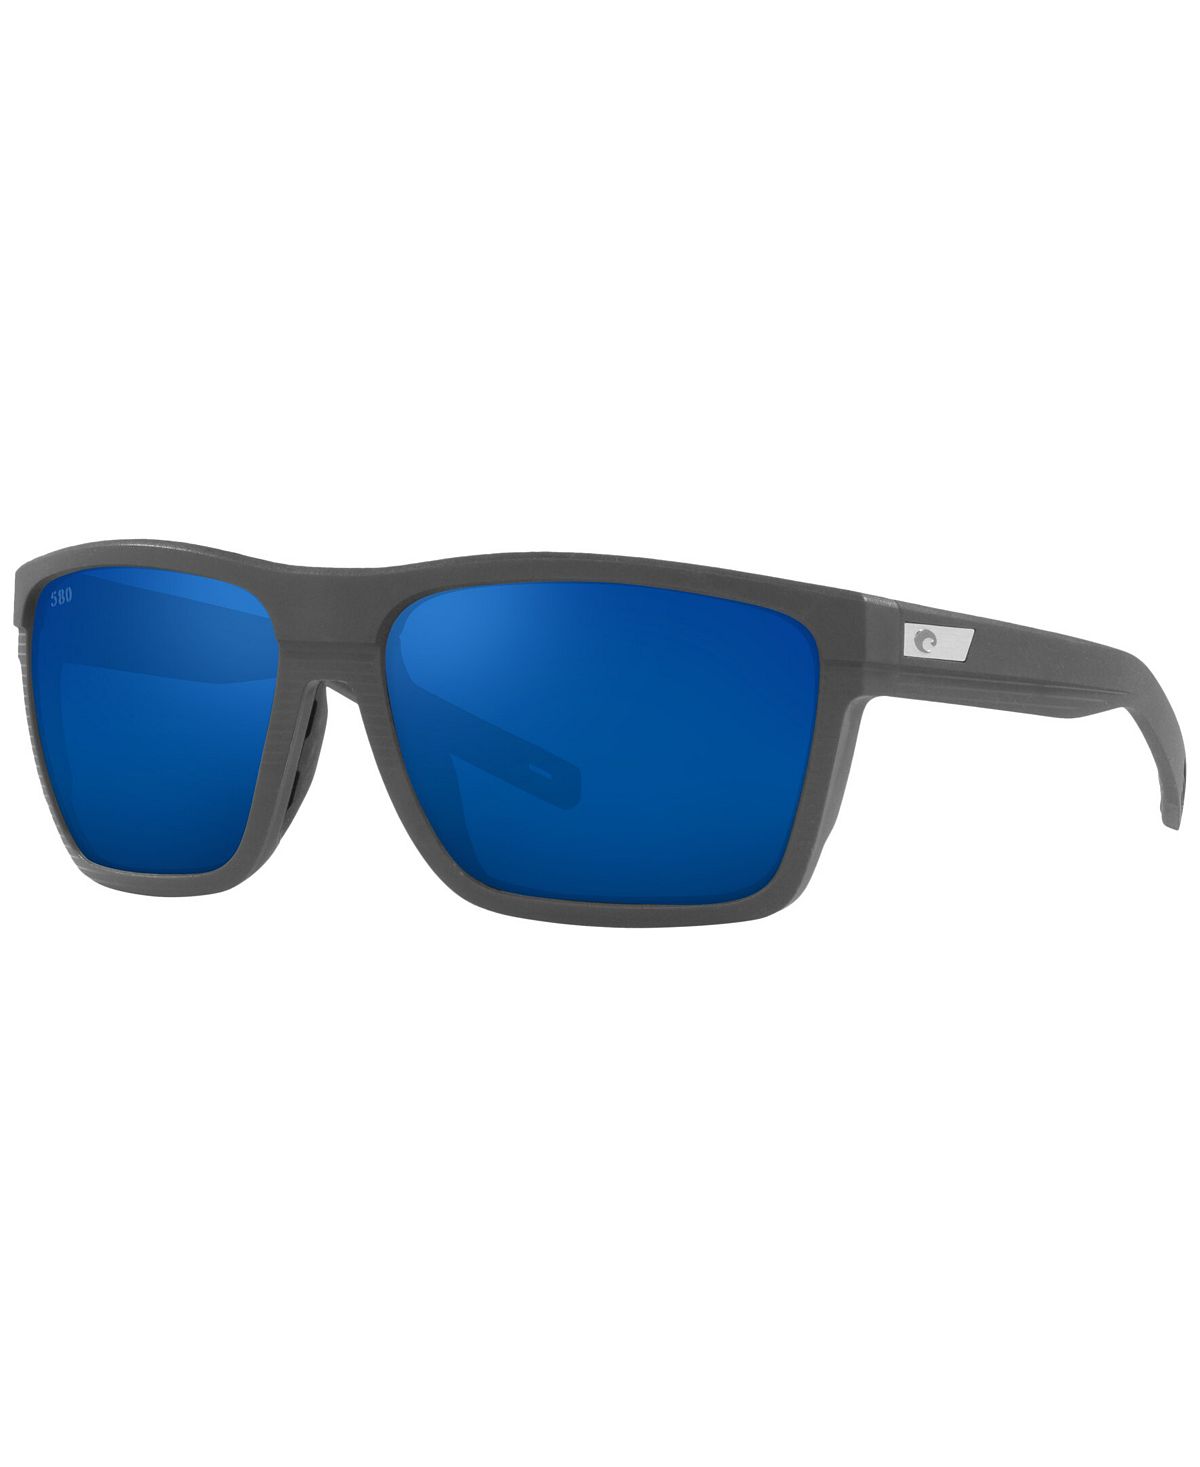 Мужские поляризованные солнцезащитные очки, Pargo 61 Costa Del Mar